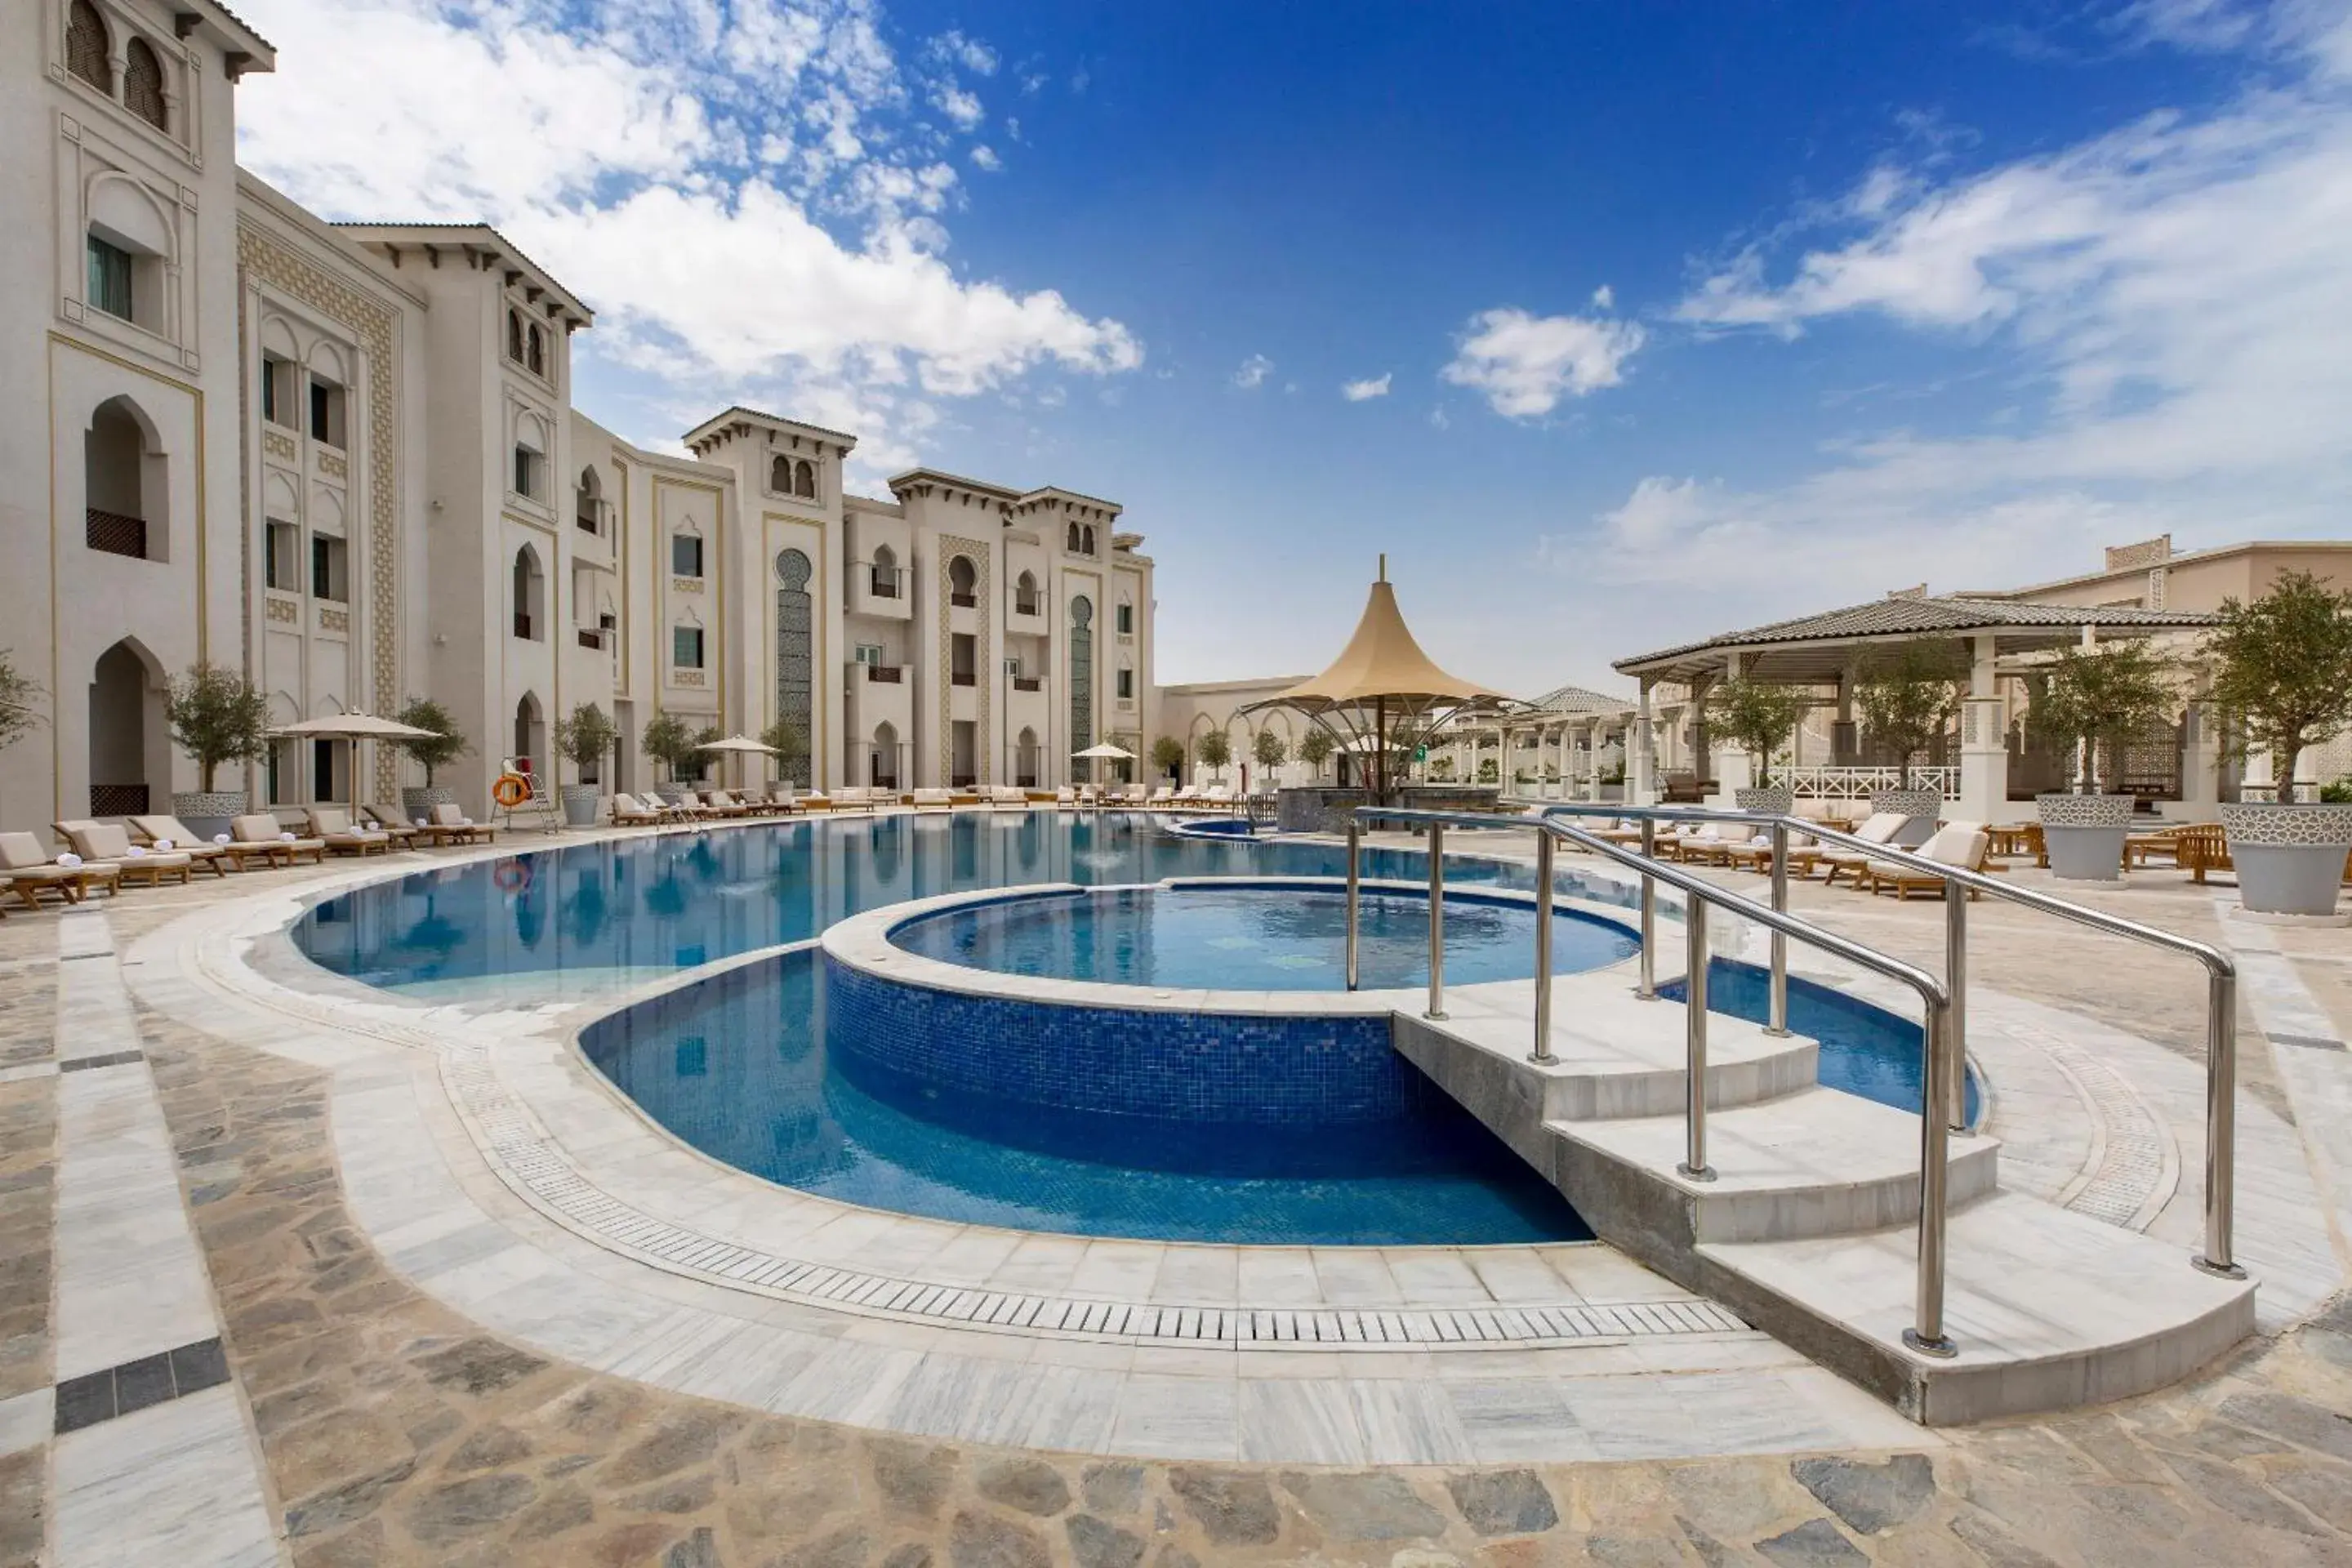 Swimming Pool in Ezdan Palace Hotel